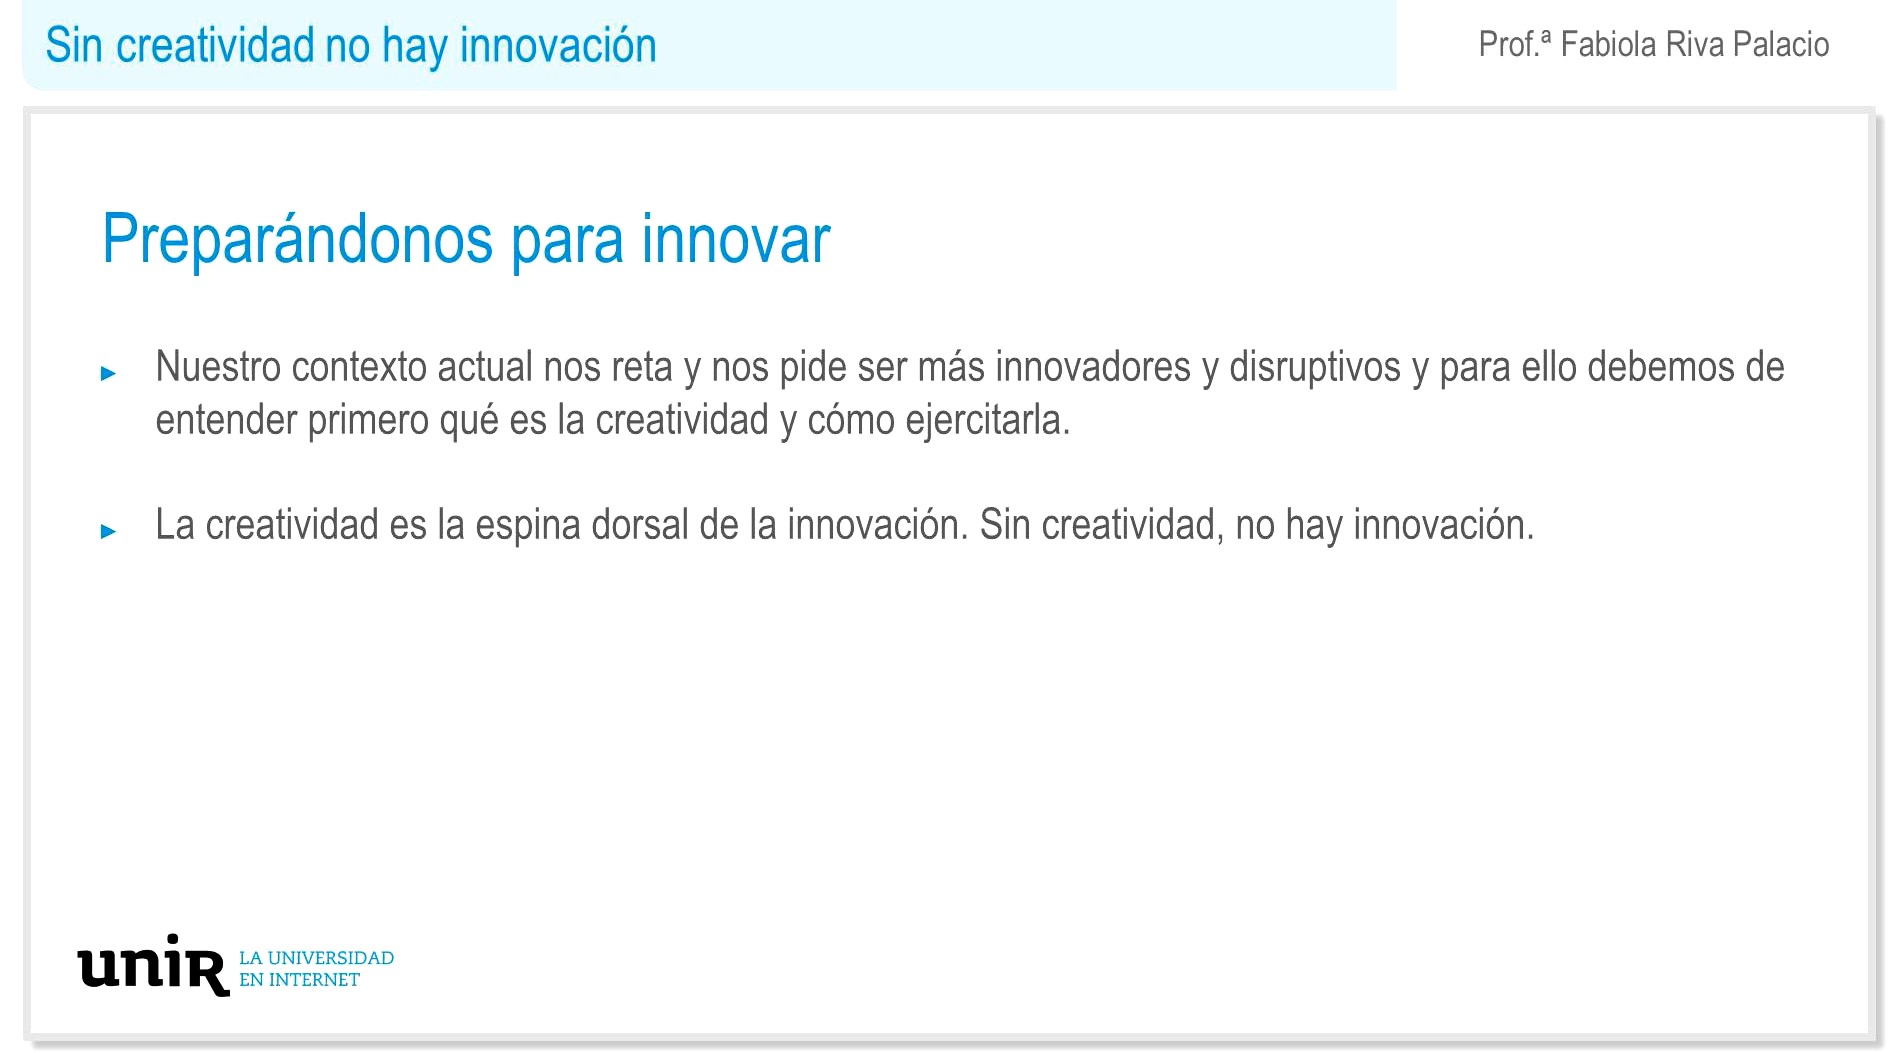 Sin-creatividad-no-hay-innovacion-